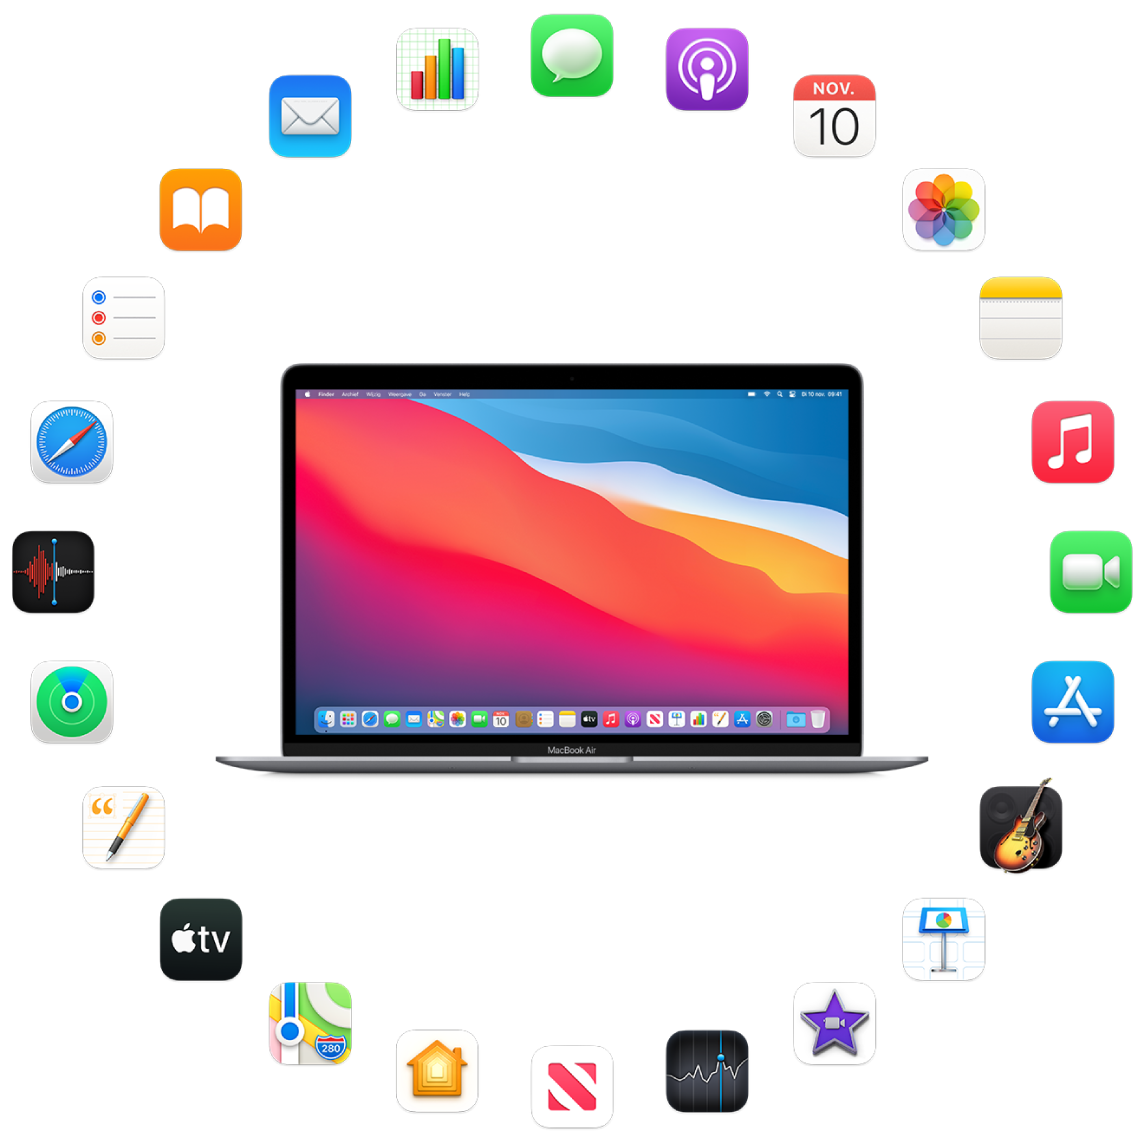 Een MacBook Air omringd door symbolen voor de apps die standaard worden meegeleverd en die hierna worden beschreven.